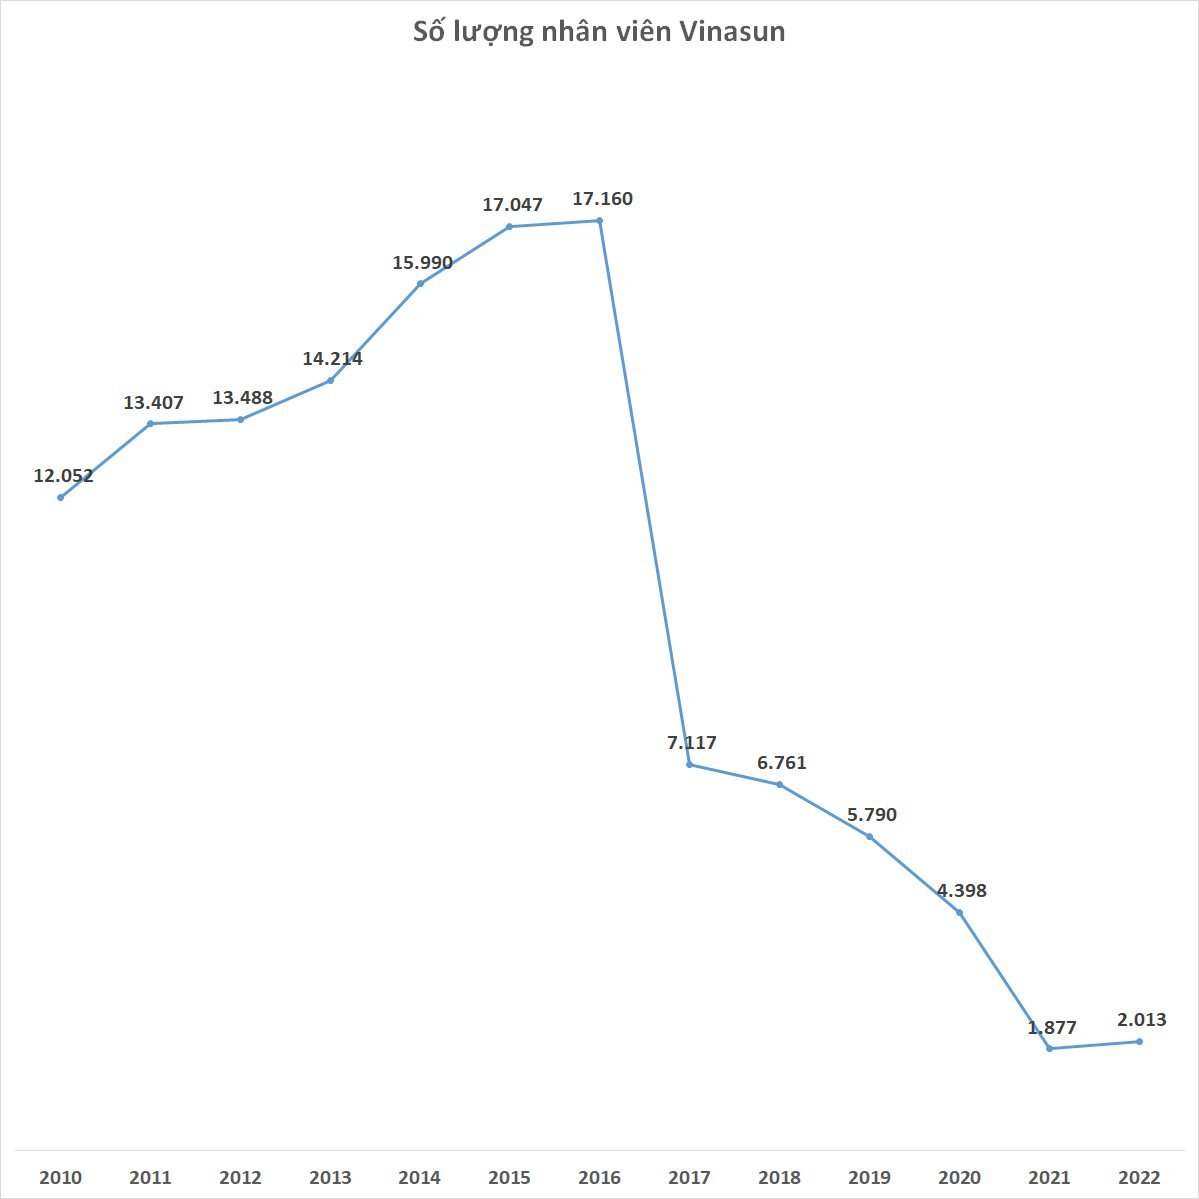 Vinasun lần đầu tiên tuyển người trở lại sau khi cắt giảm 15.000 nhân sự trong 5 năm - Ảnh 2.